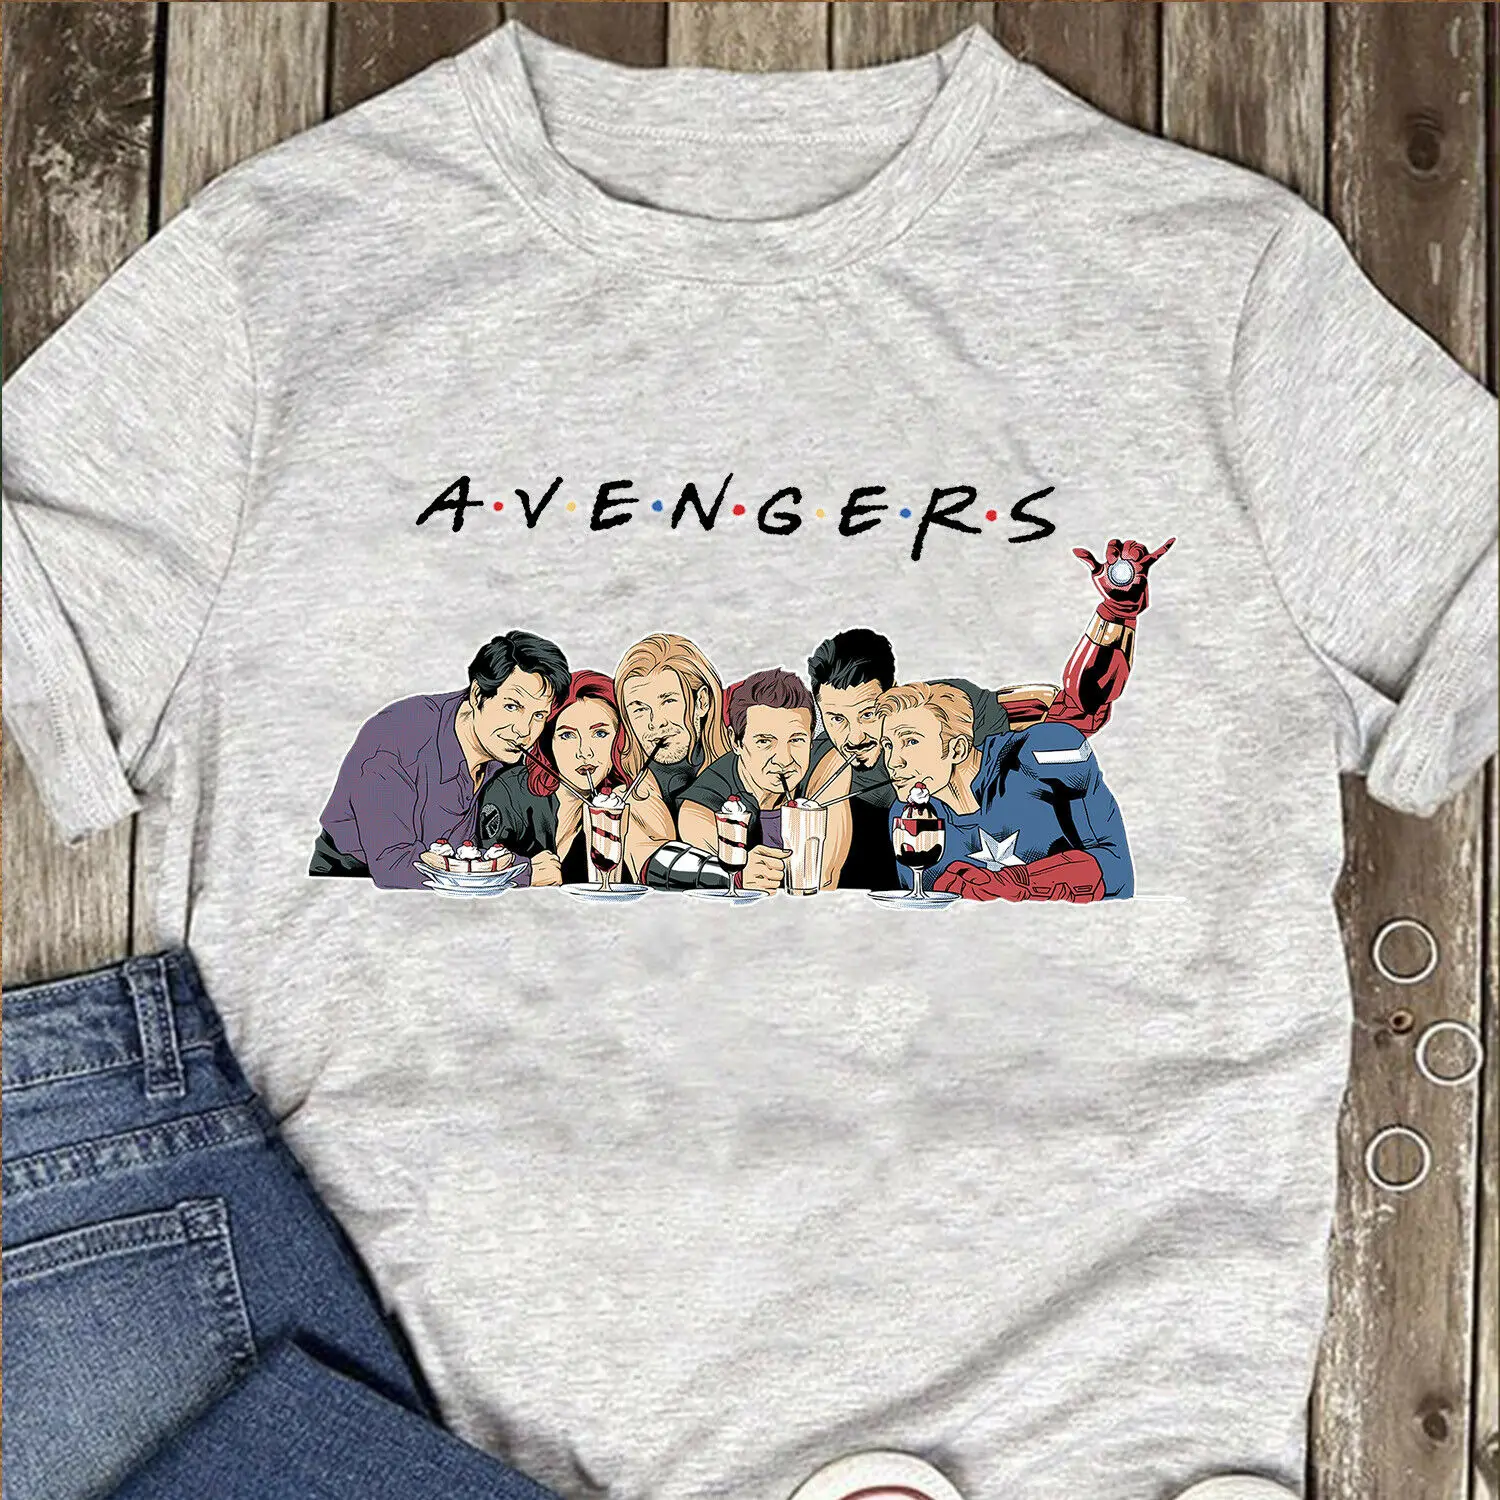 Marvel Мстители Черная Вдова Капитан Америка для мужчин Спорт серая футболка хлопок S-3XL 2019 новый 100% хлопковые футболки для мужчин Топ